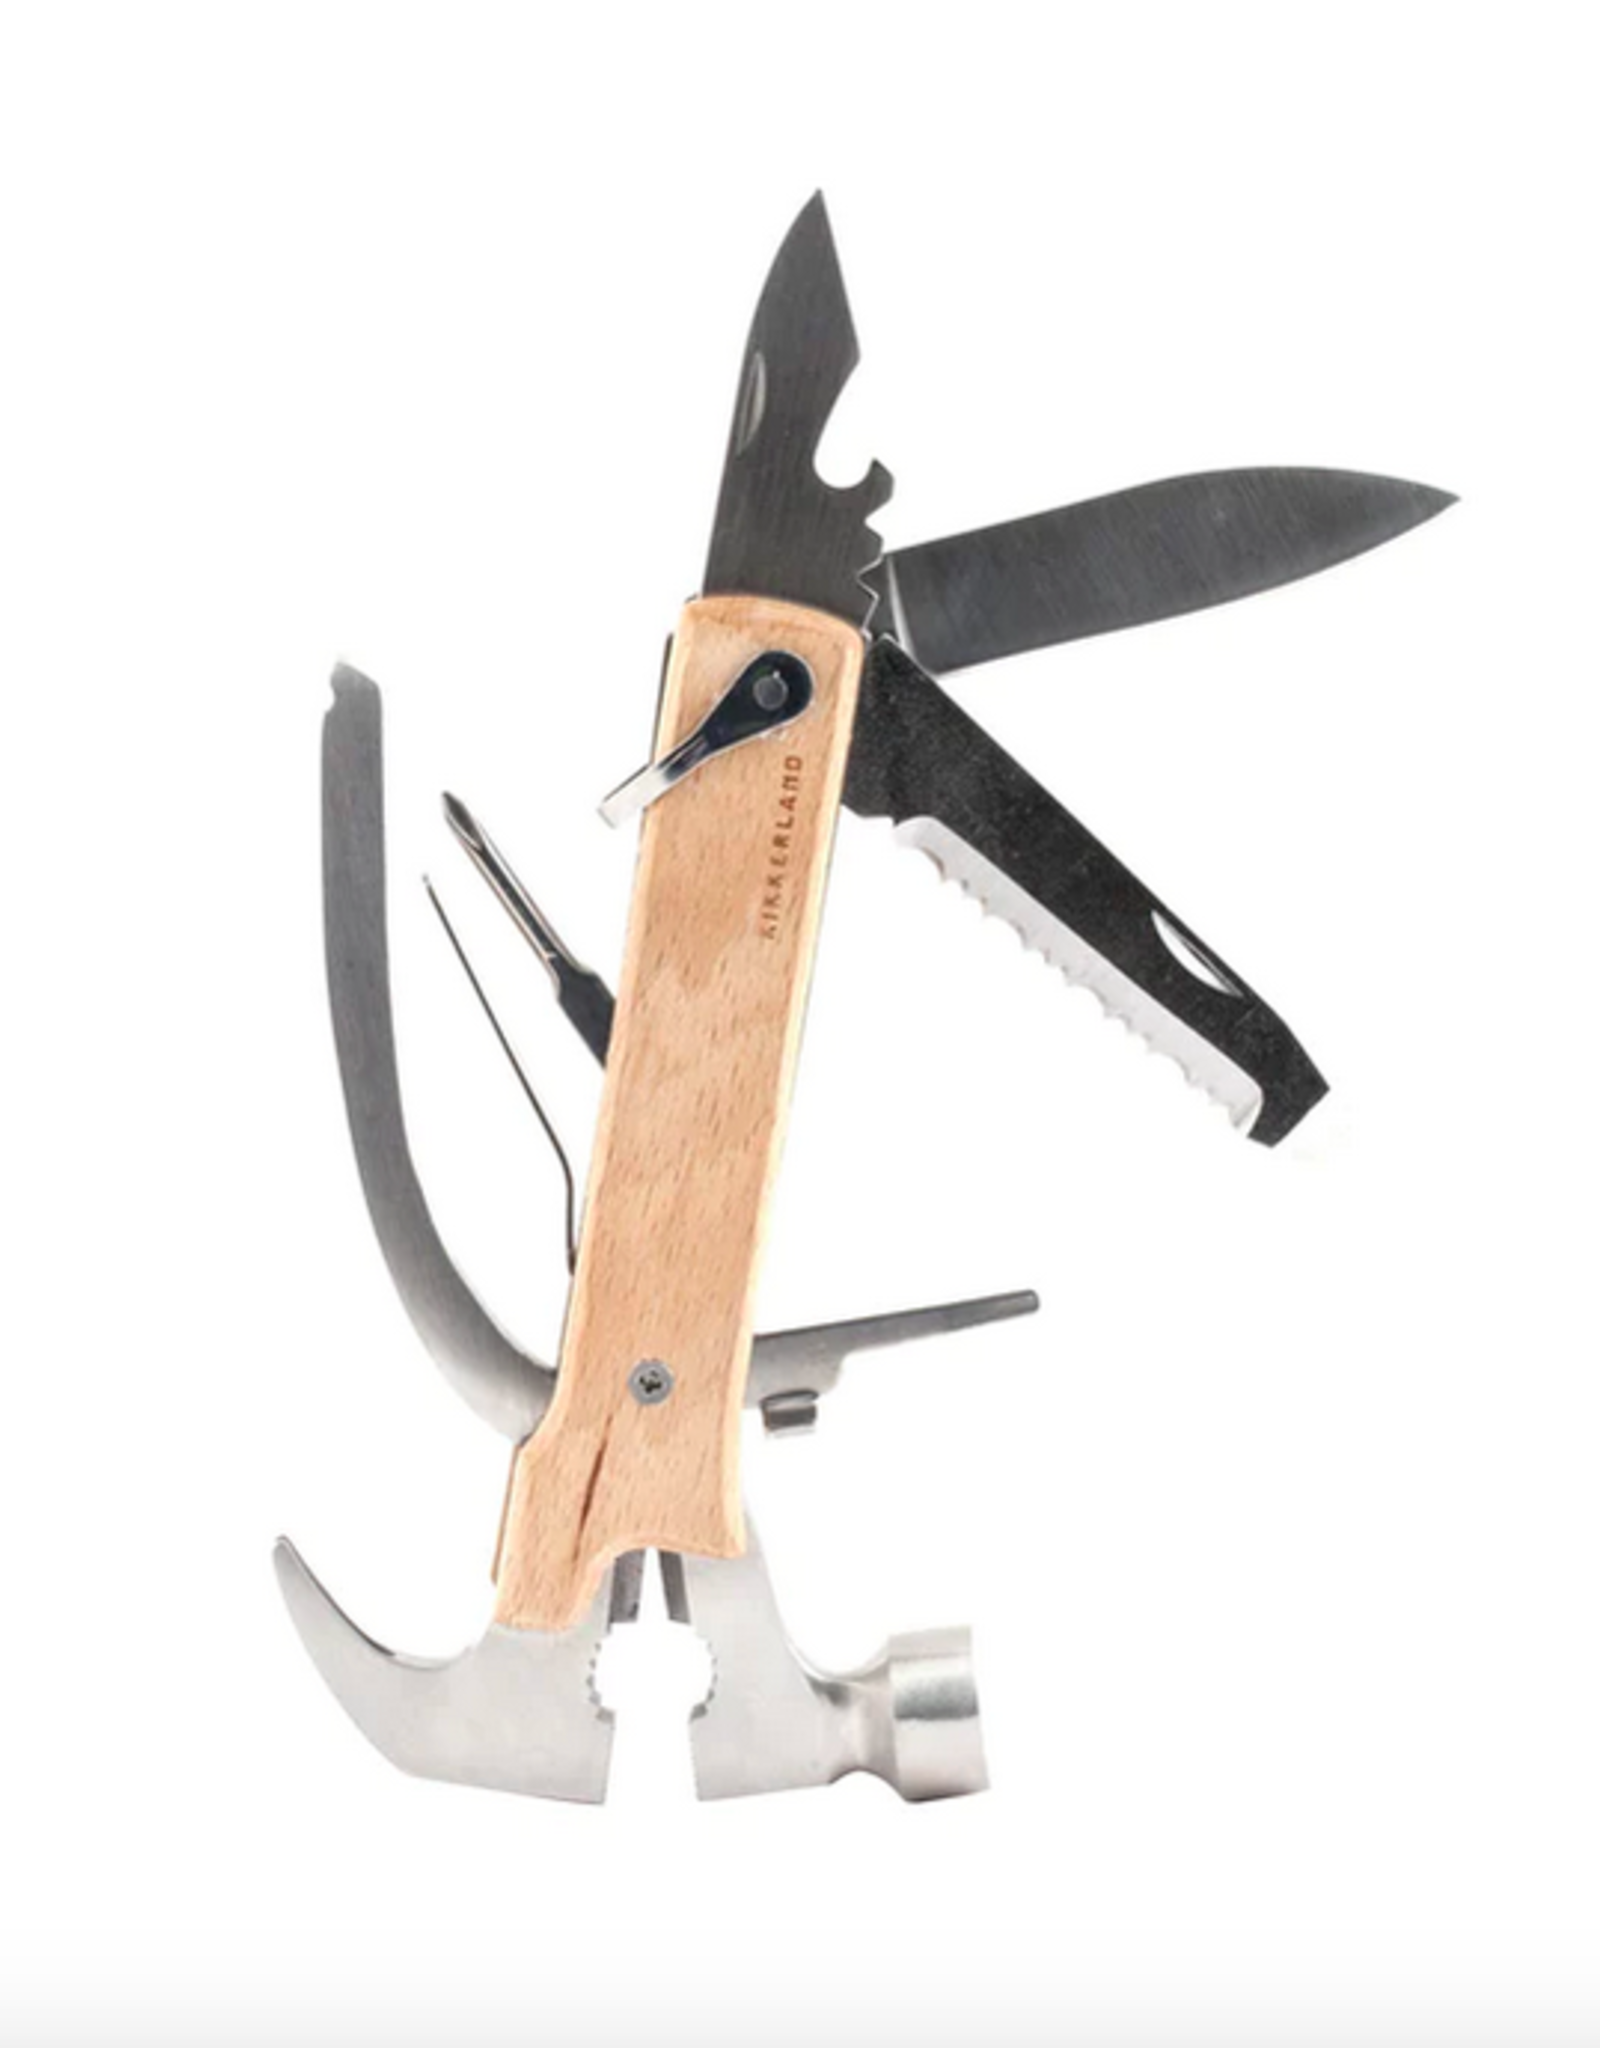 Kikkerland Wood Multi Hammer tool